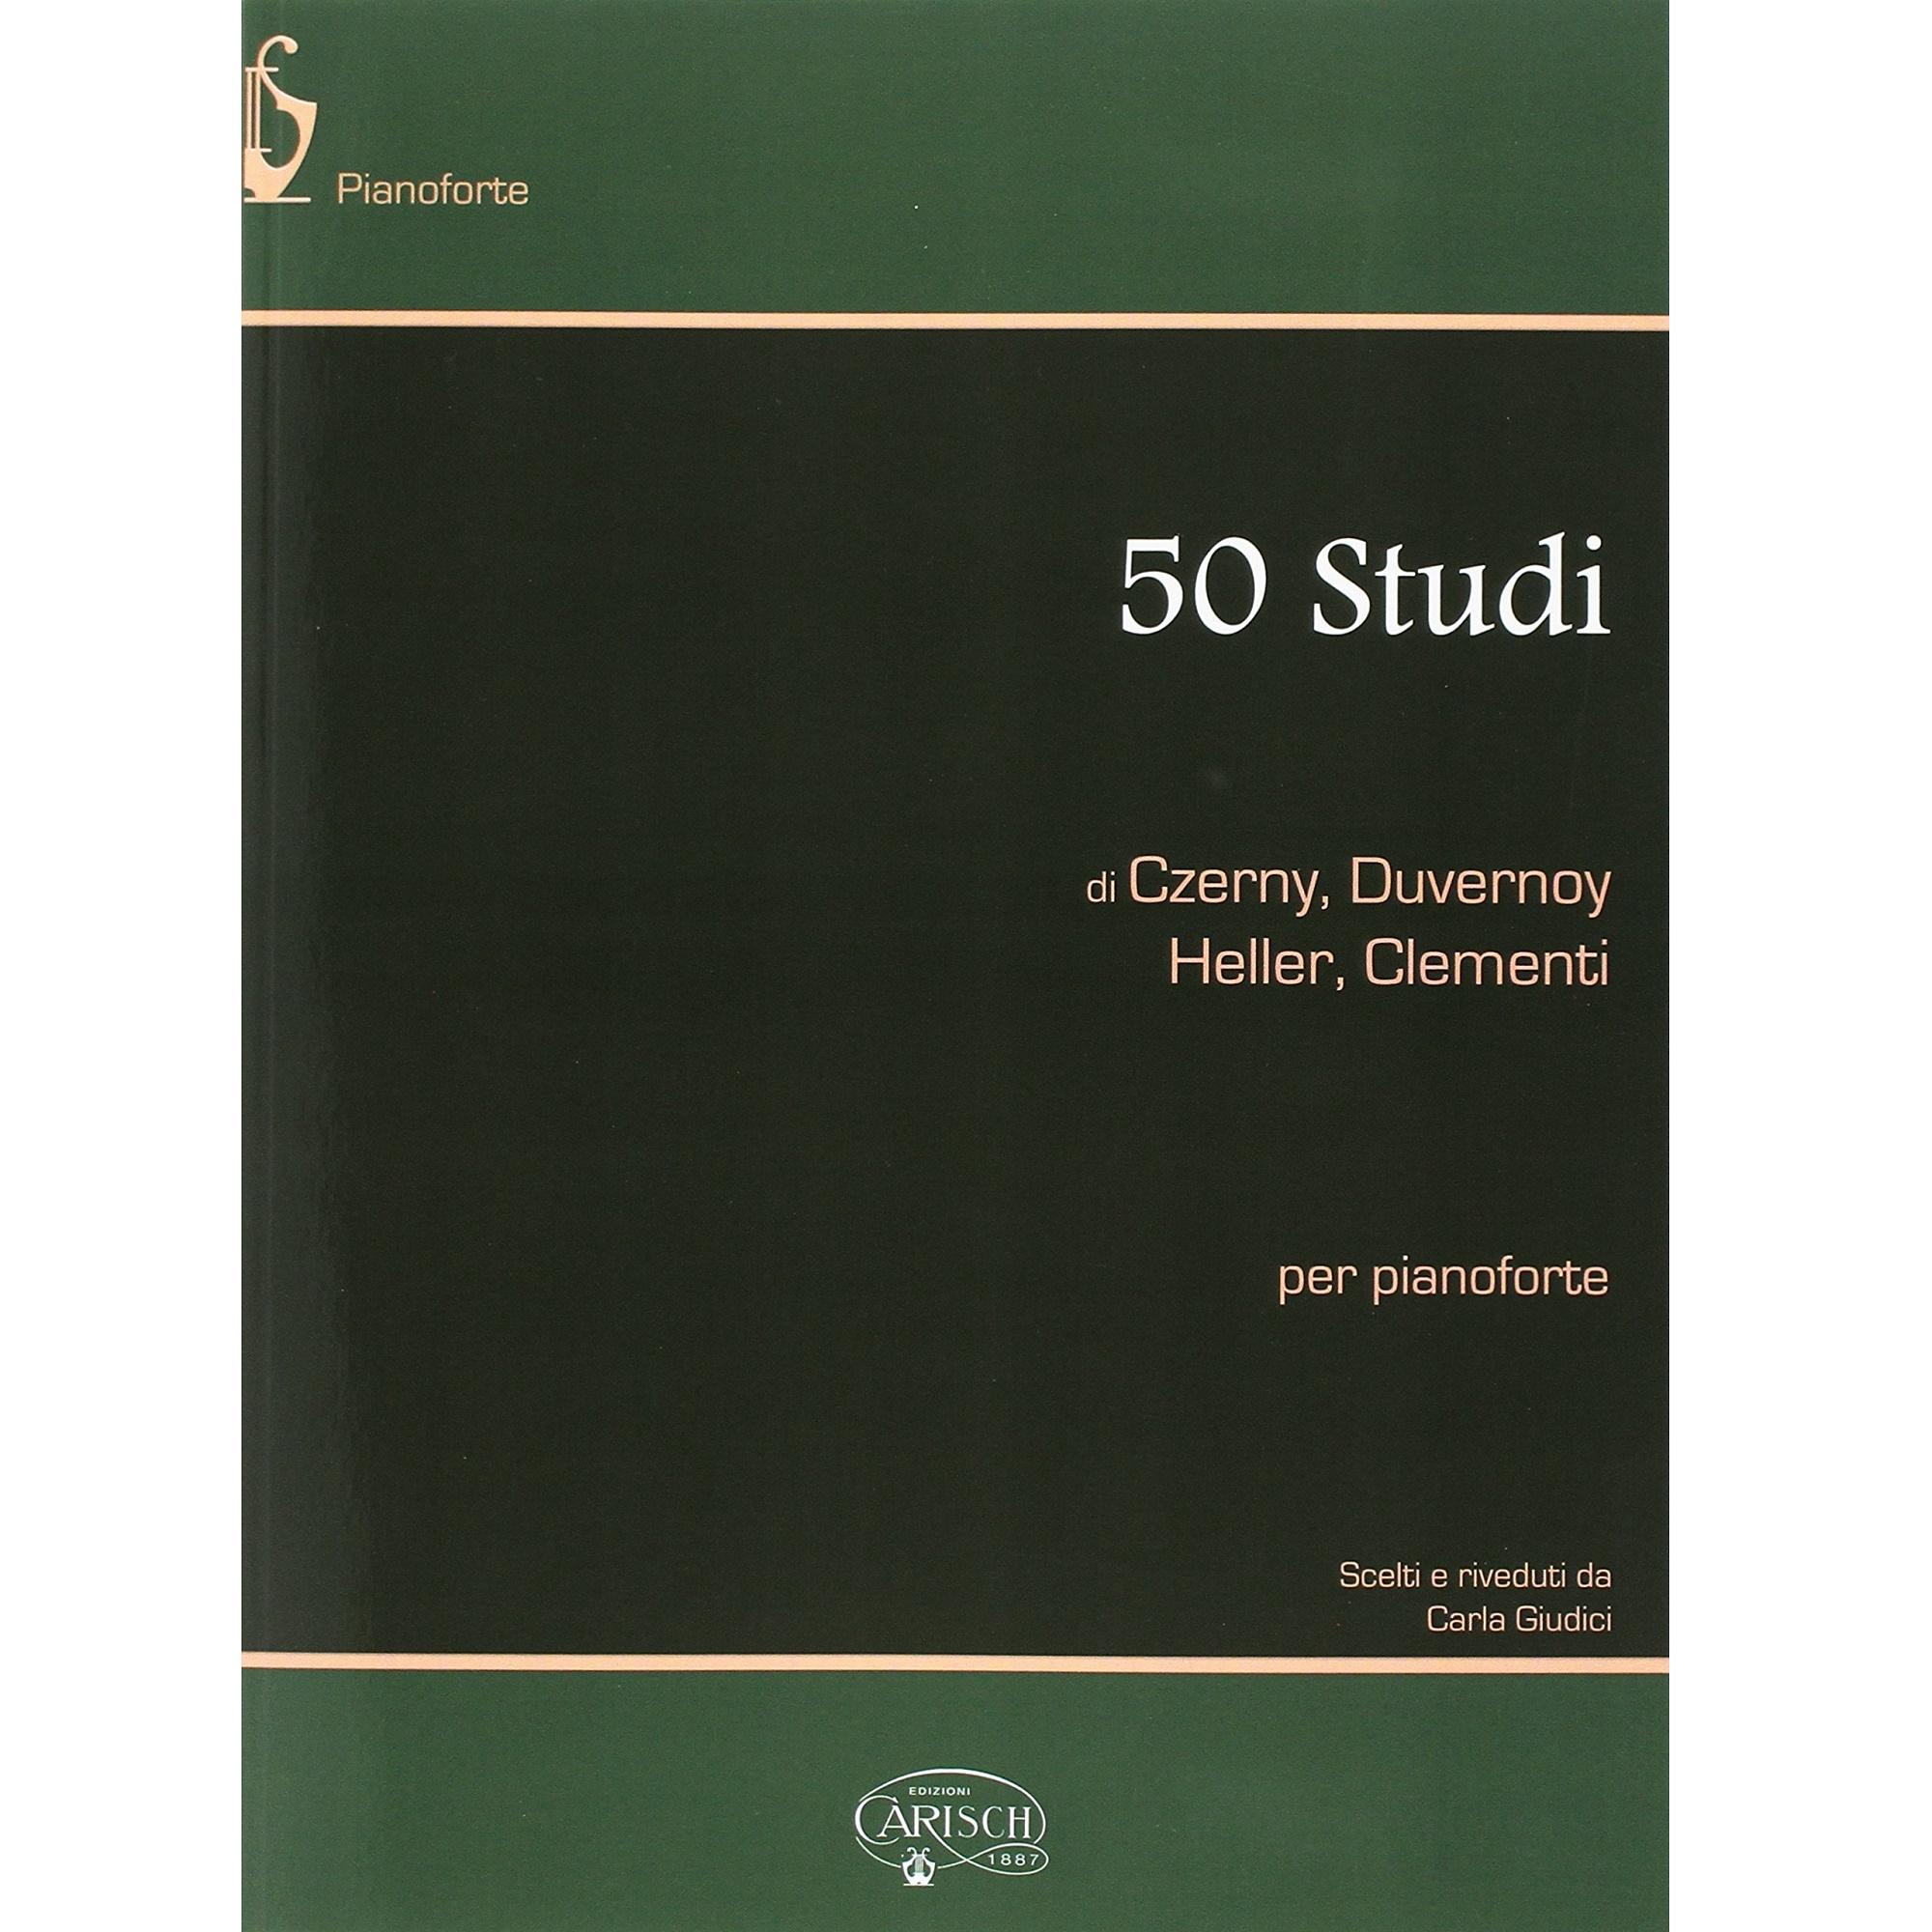 Clementi 50 Studi per pianoforte - Carisch